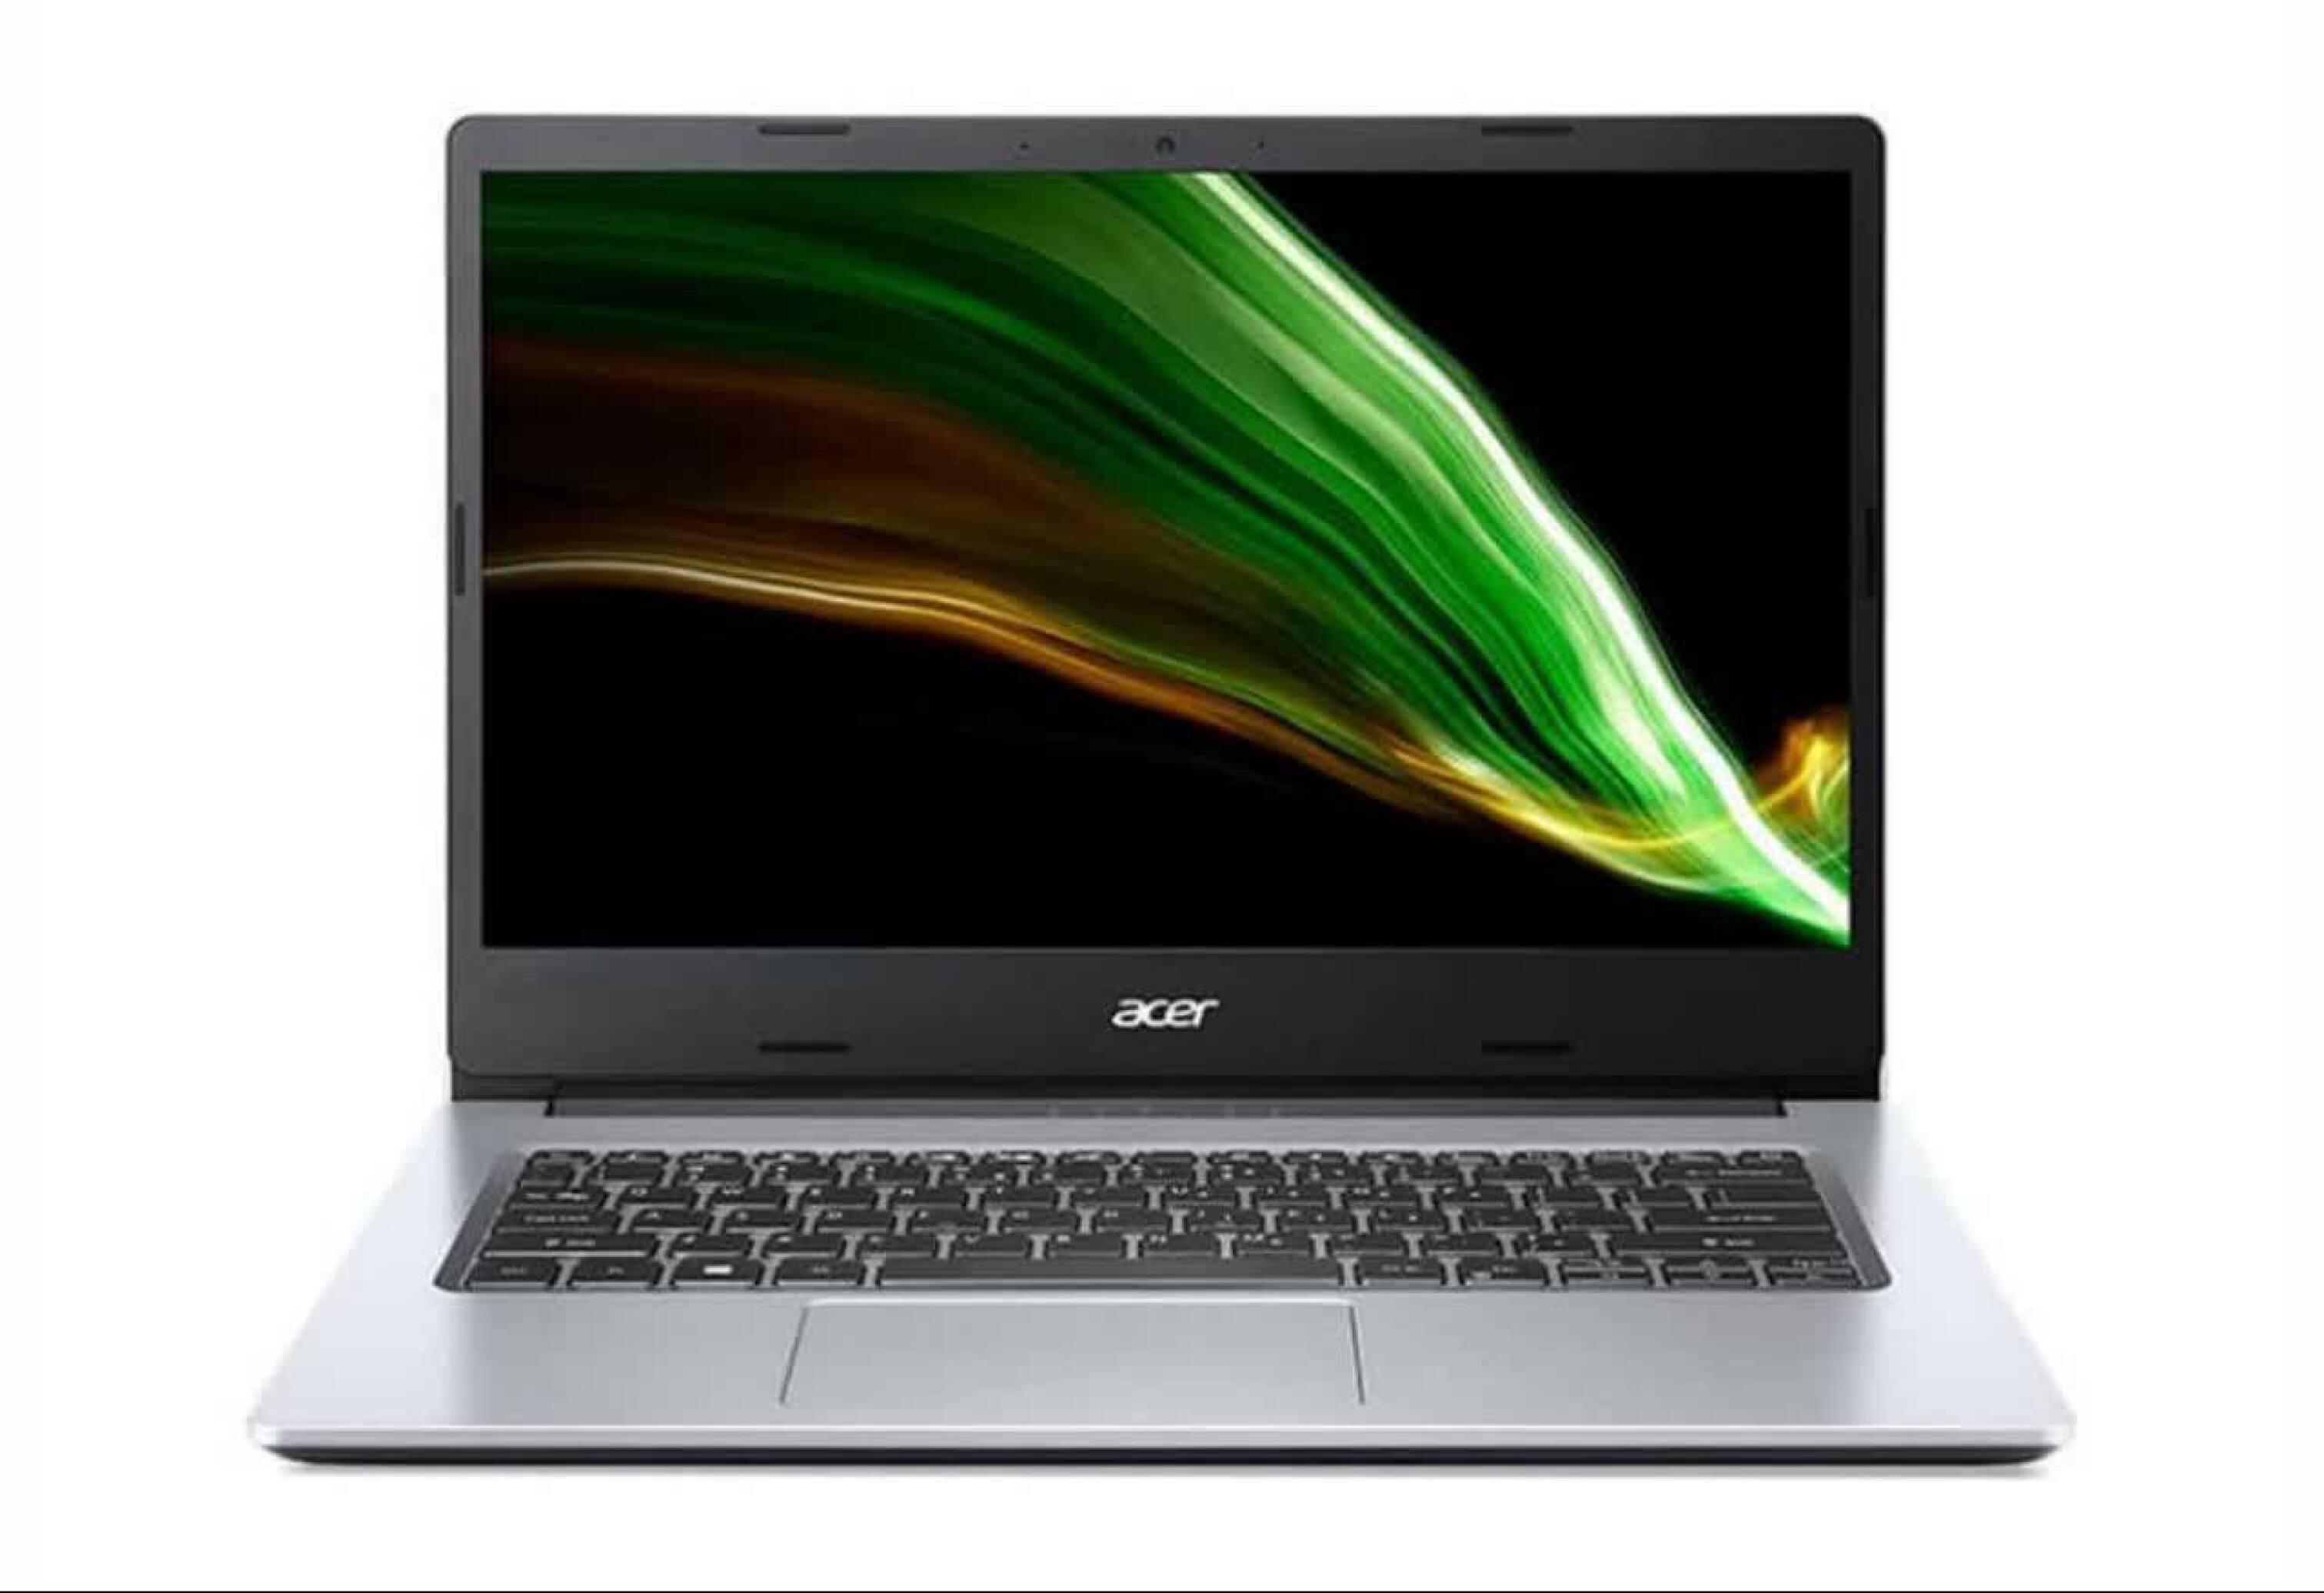  Acer Aspire 3 A315 i7 